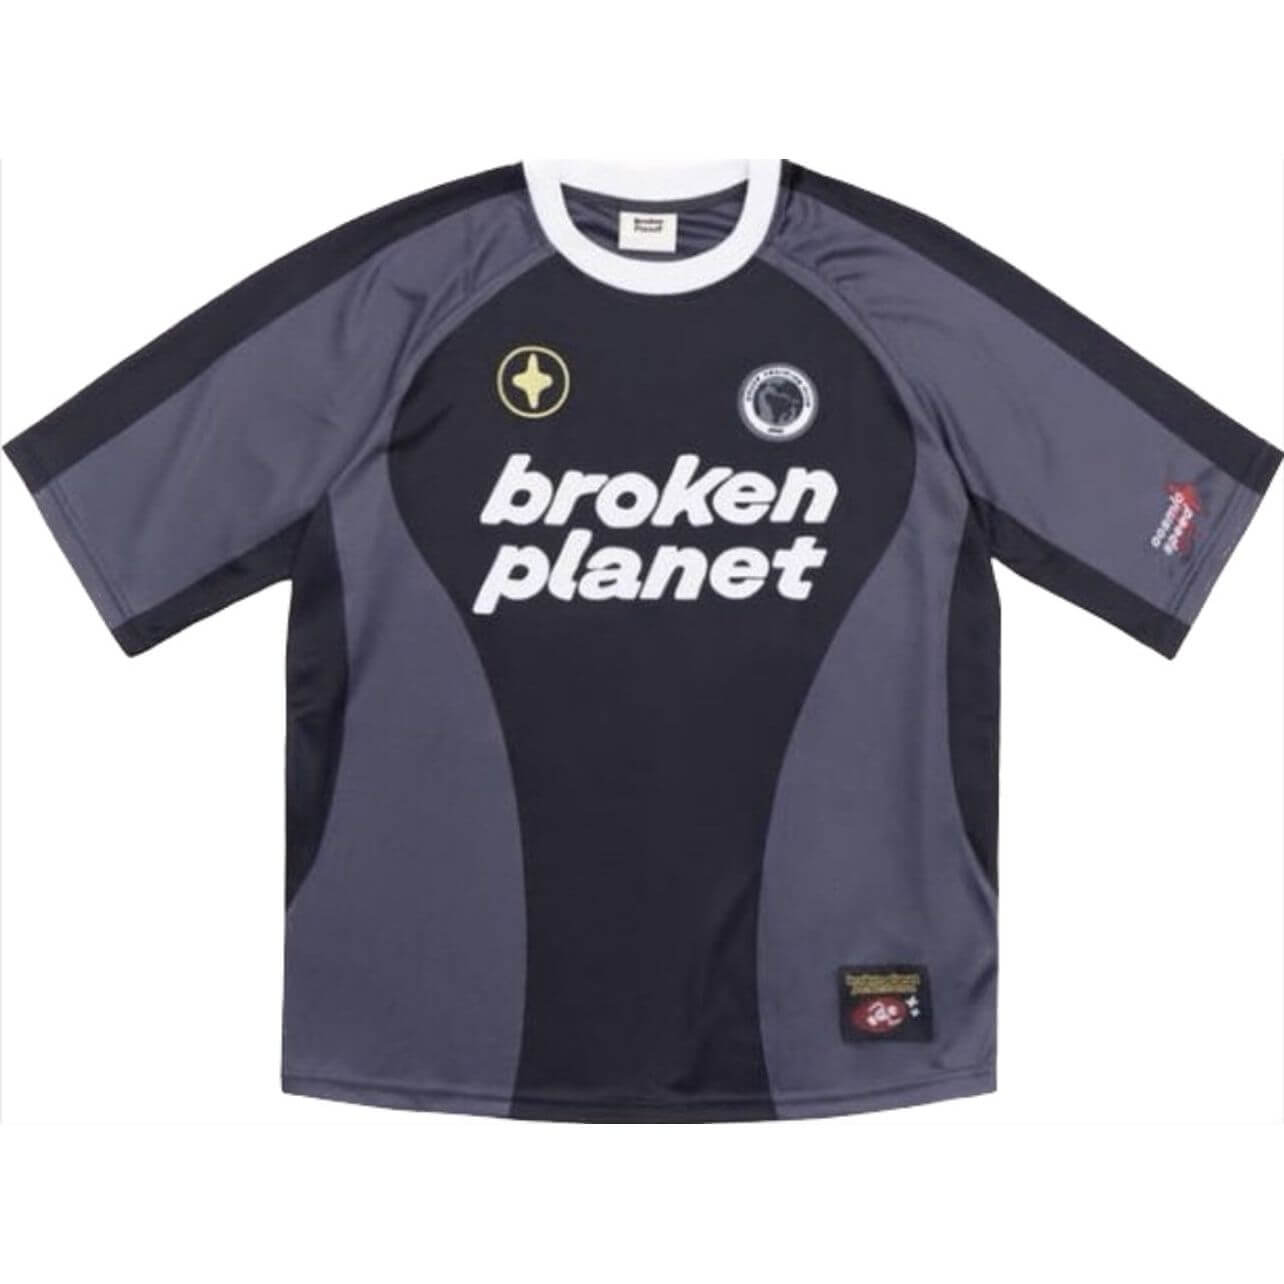 Broken Planet Football Jersey from Broken Planet Market